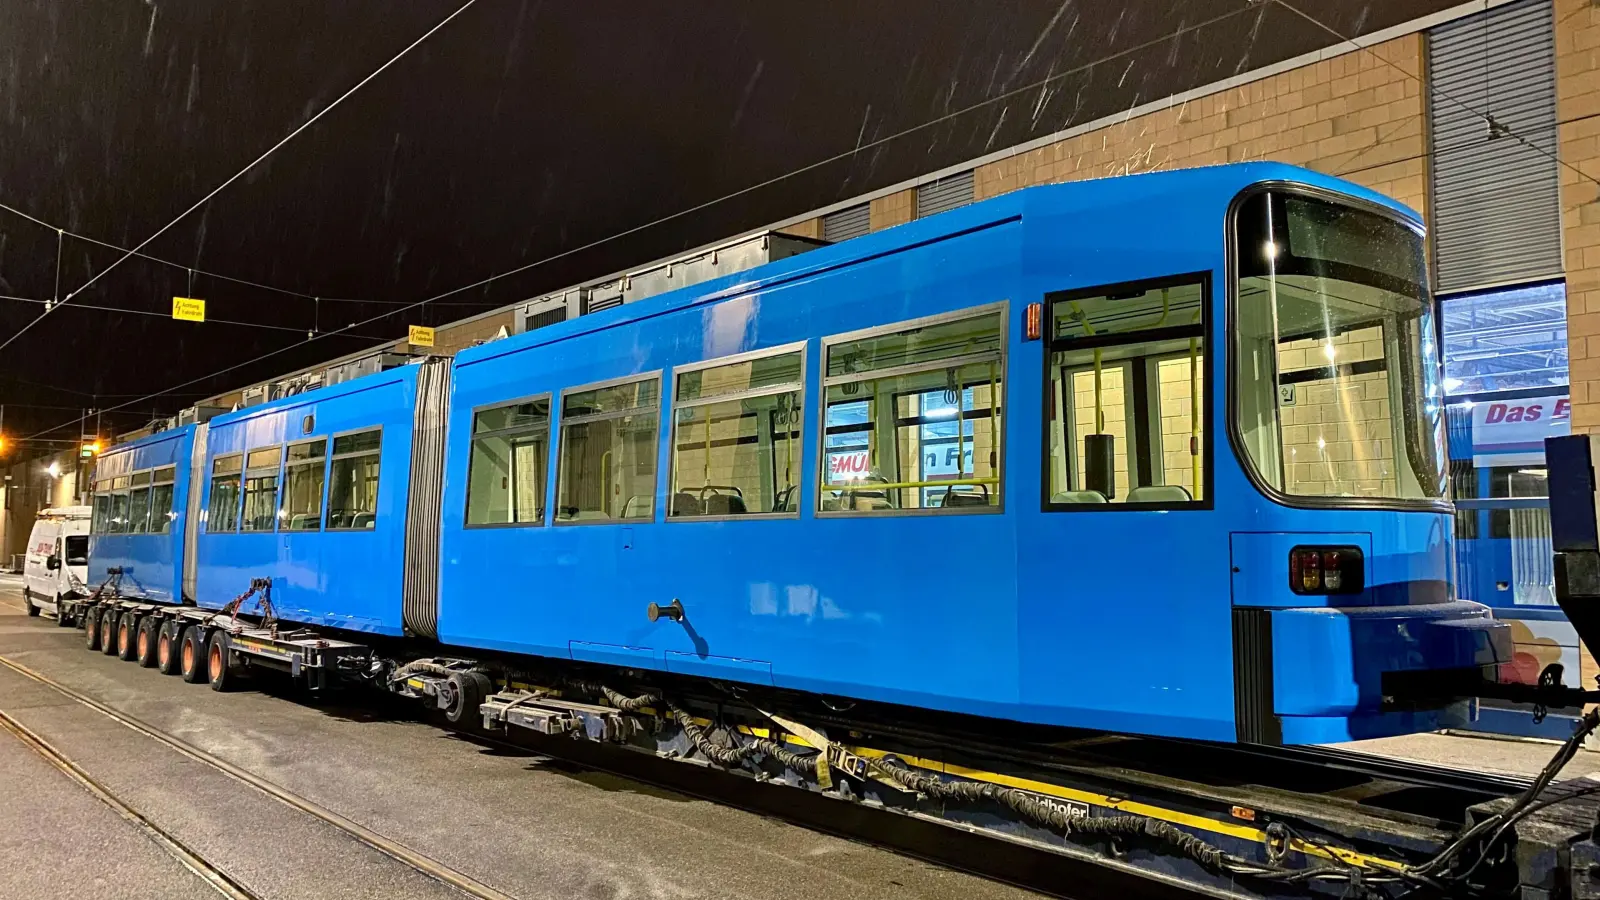 Die erste der elf Straßenbahnen ist nun auf dem Weg in die kroatische Hauptstadt. Alle GT6-Bahnen werden bereits vor ihrer Abreise blau lackiert, in der Farbe der Zagreber Verkehrsbetriebe. (Foto: swa / Thomas Hosemann)